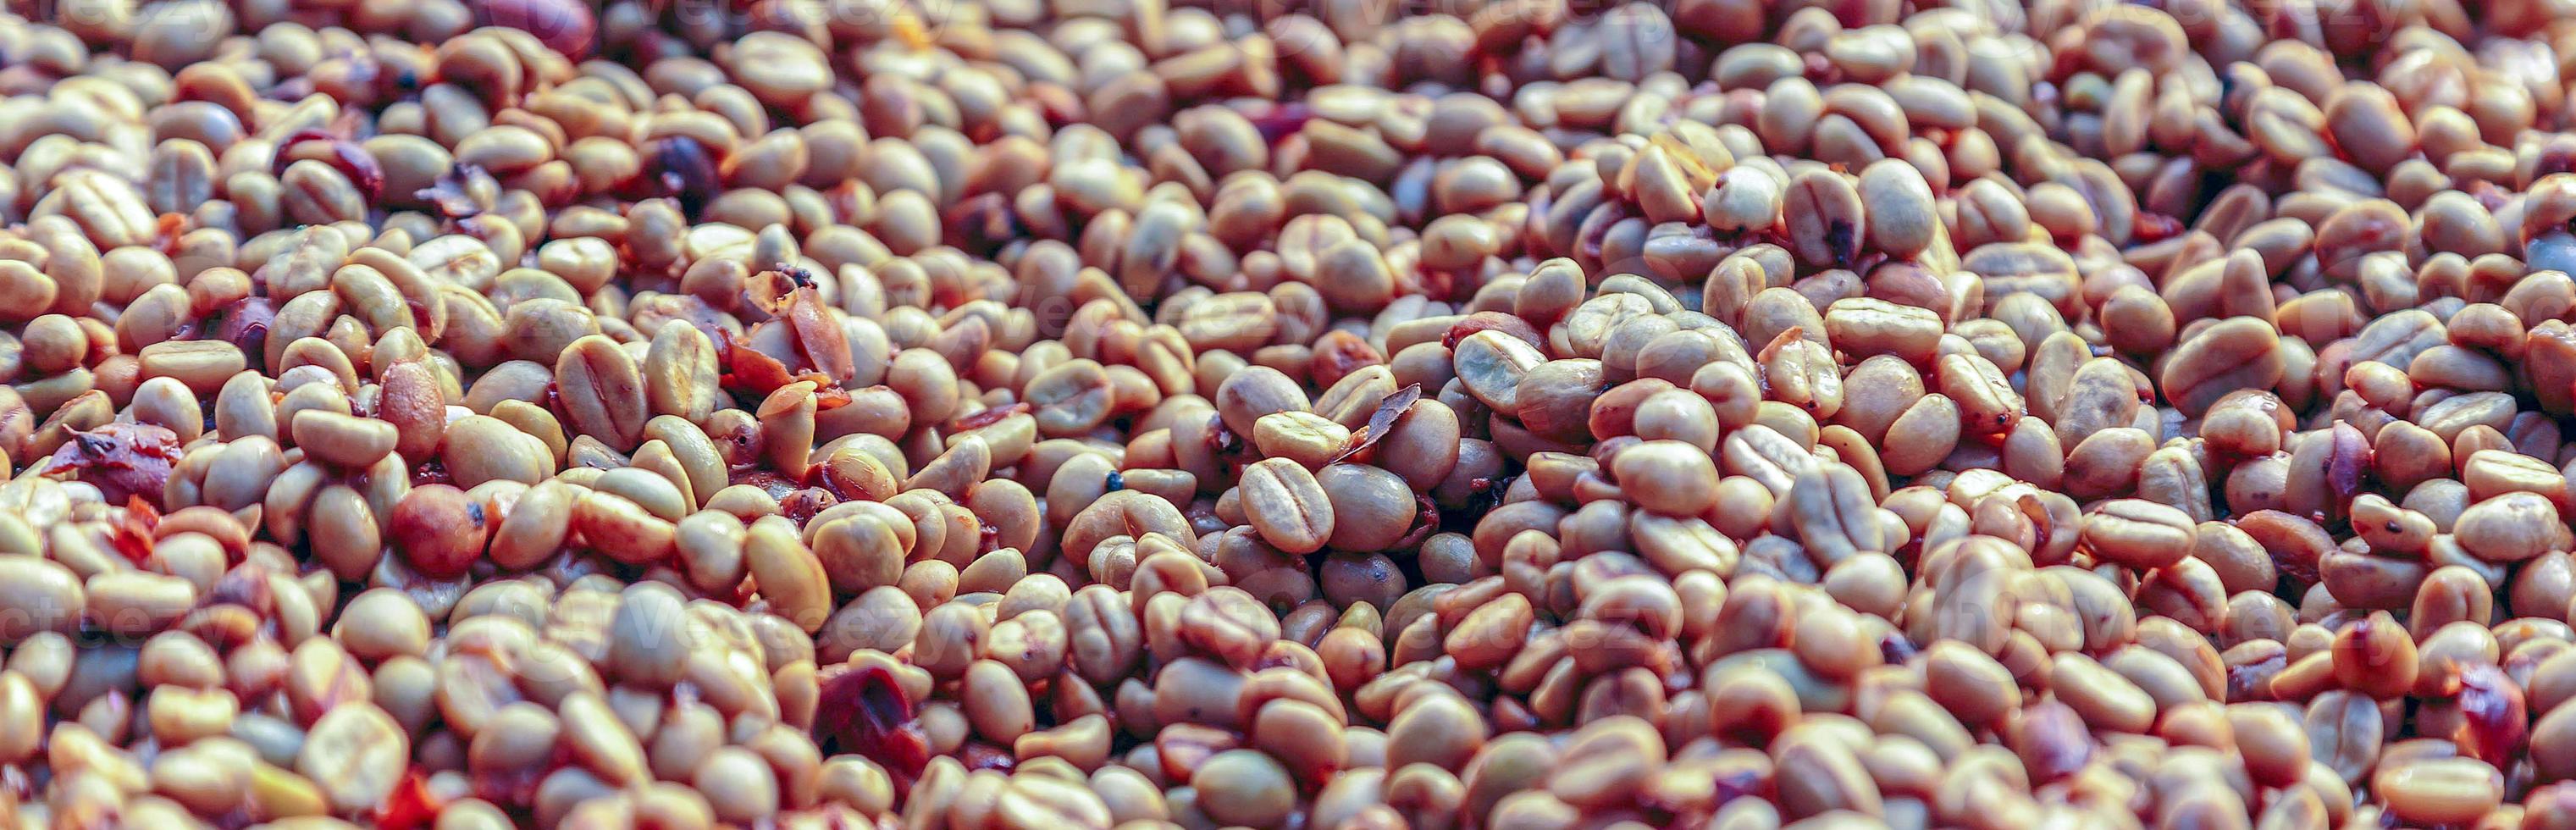 close-up de grãos de café secos. grãos de café frescos com cascas removidas foto